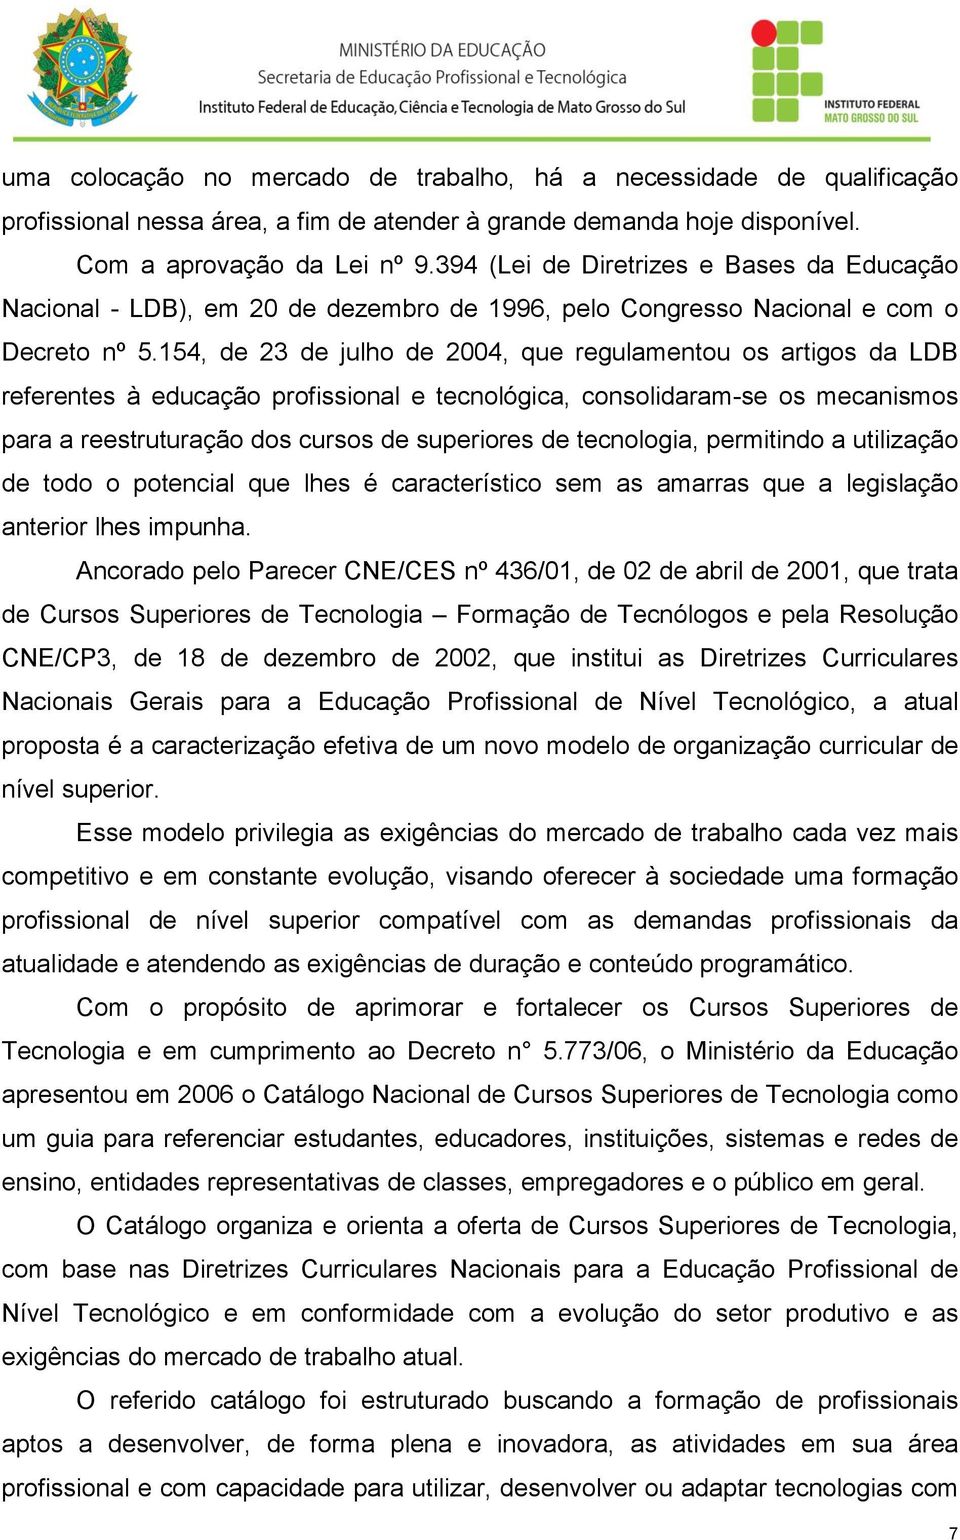 154, de 23 de julho de 2004, que regulamentou os artigos da LDB referentes à educação profissional e tecnológica, consolidaram-se os mecanismos para a reestruturação dos cursos de superiores de